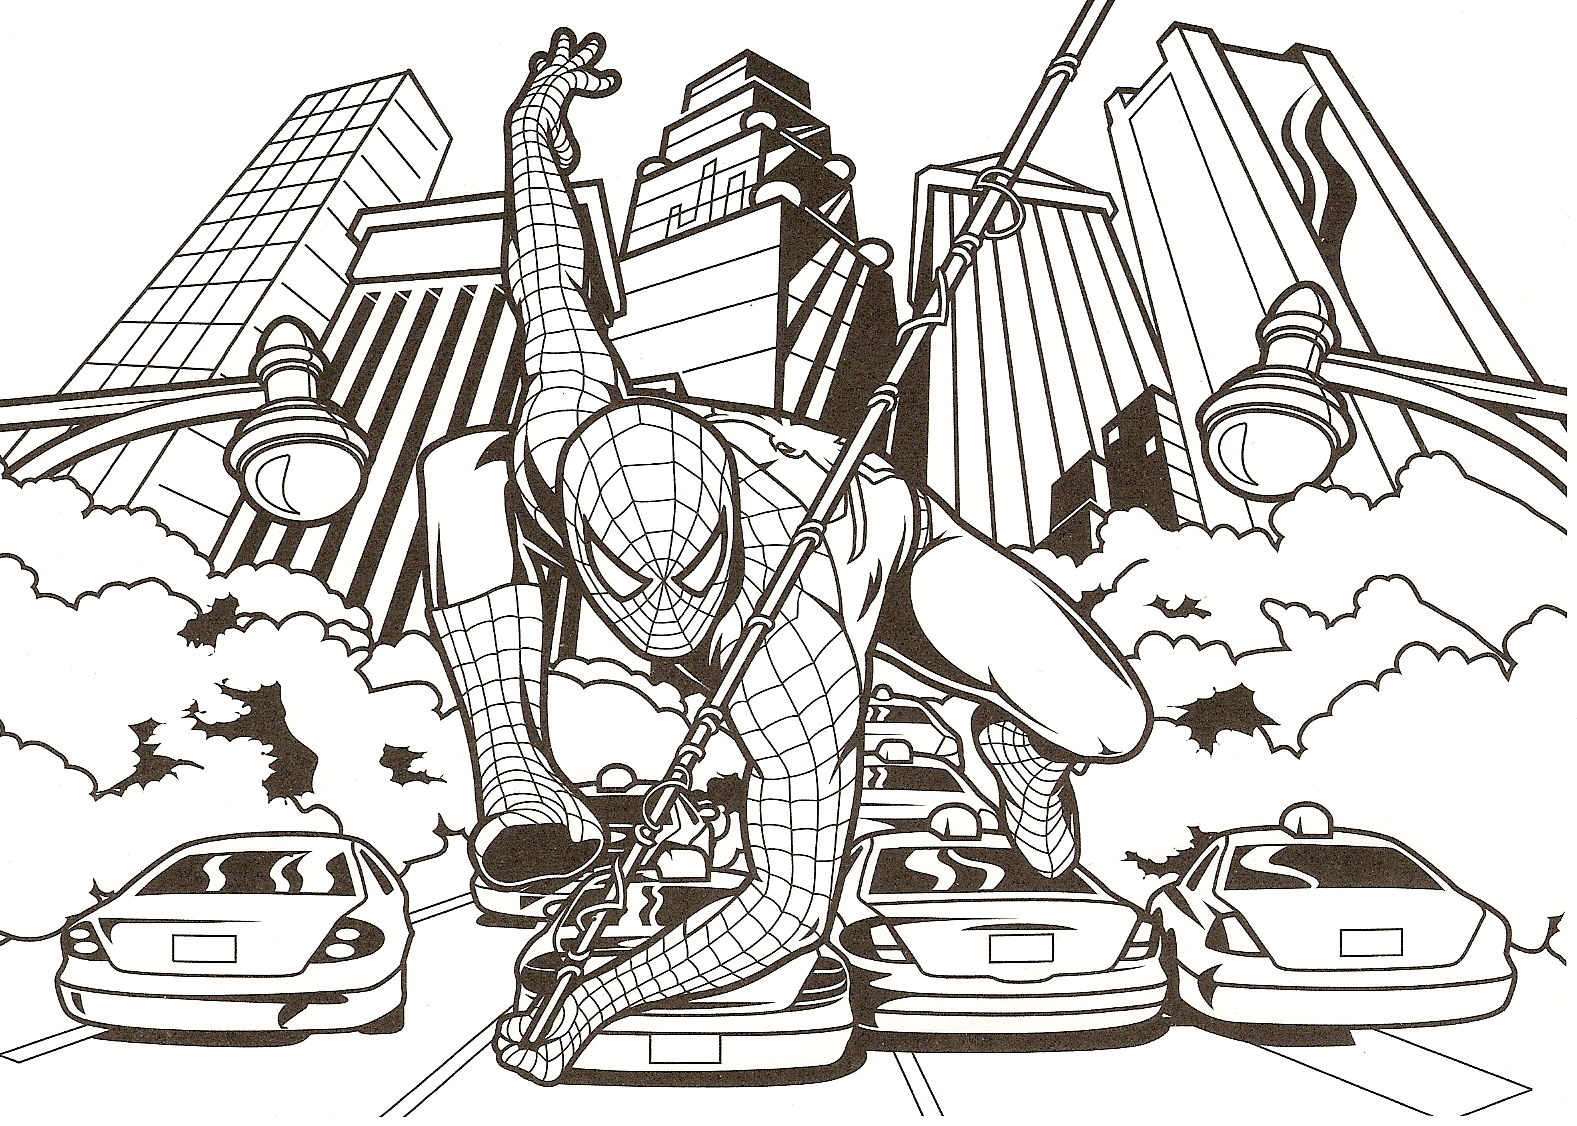 Homem-Aranha em Nova Iorque - Spiderman - Just Color Crianças : Páginas  para colorir para crianças